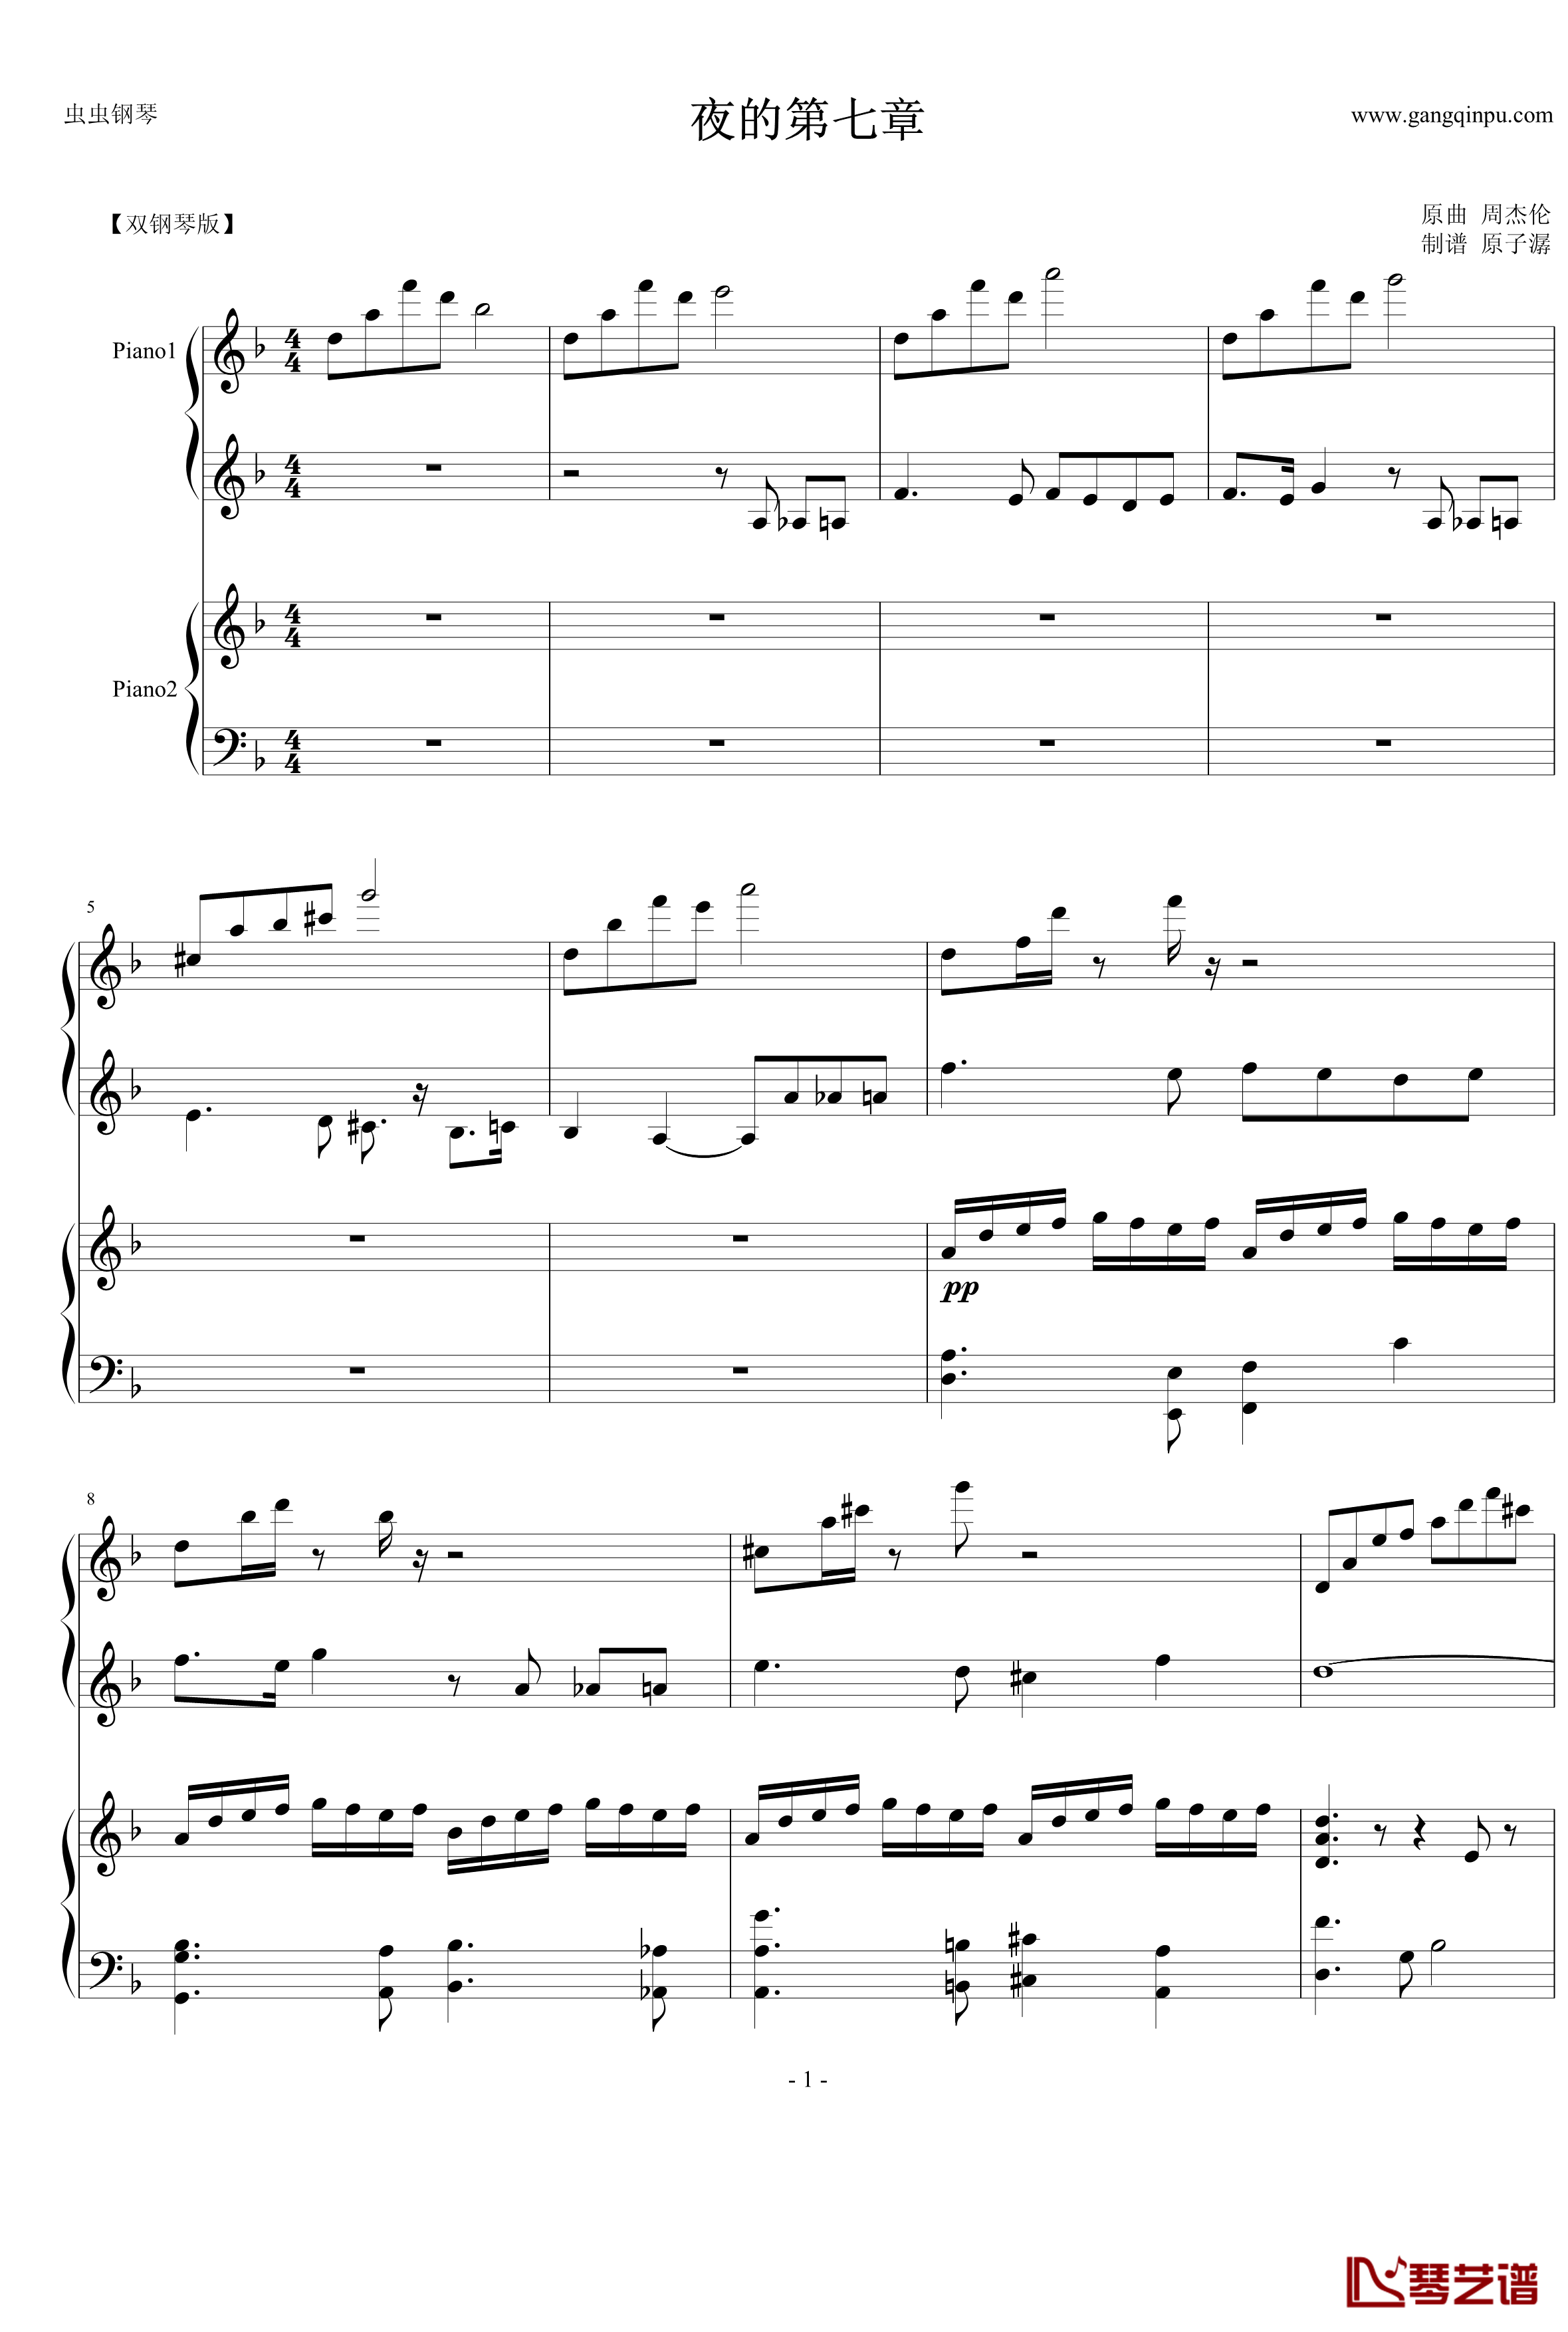 夜的第七章钢琴谱-双钢琴-周杰伦1